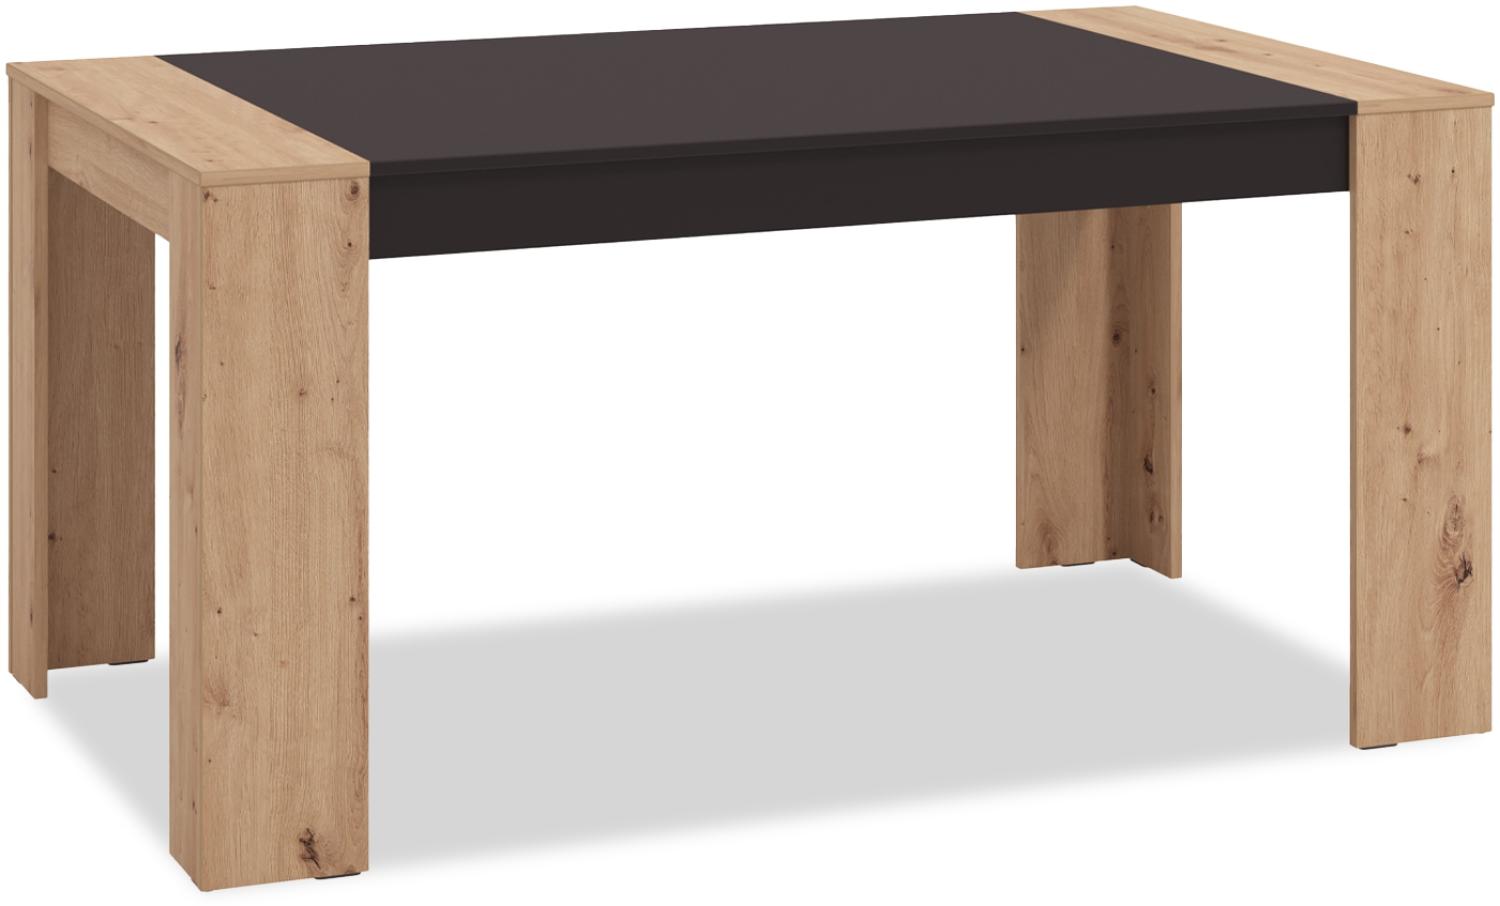 Esstisch Esszimmertisch 154x90 cm Holztisch Küchentisch Tisch Holz Massiv Eiche Schwarz Bild 1